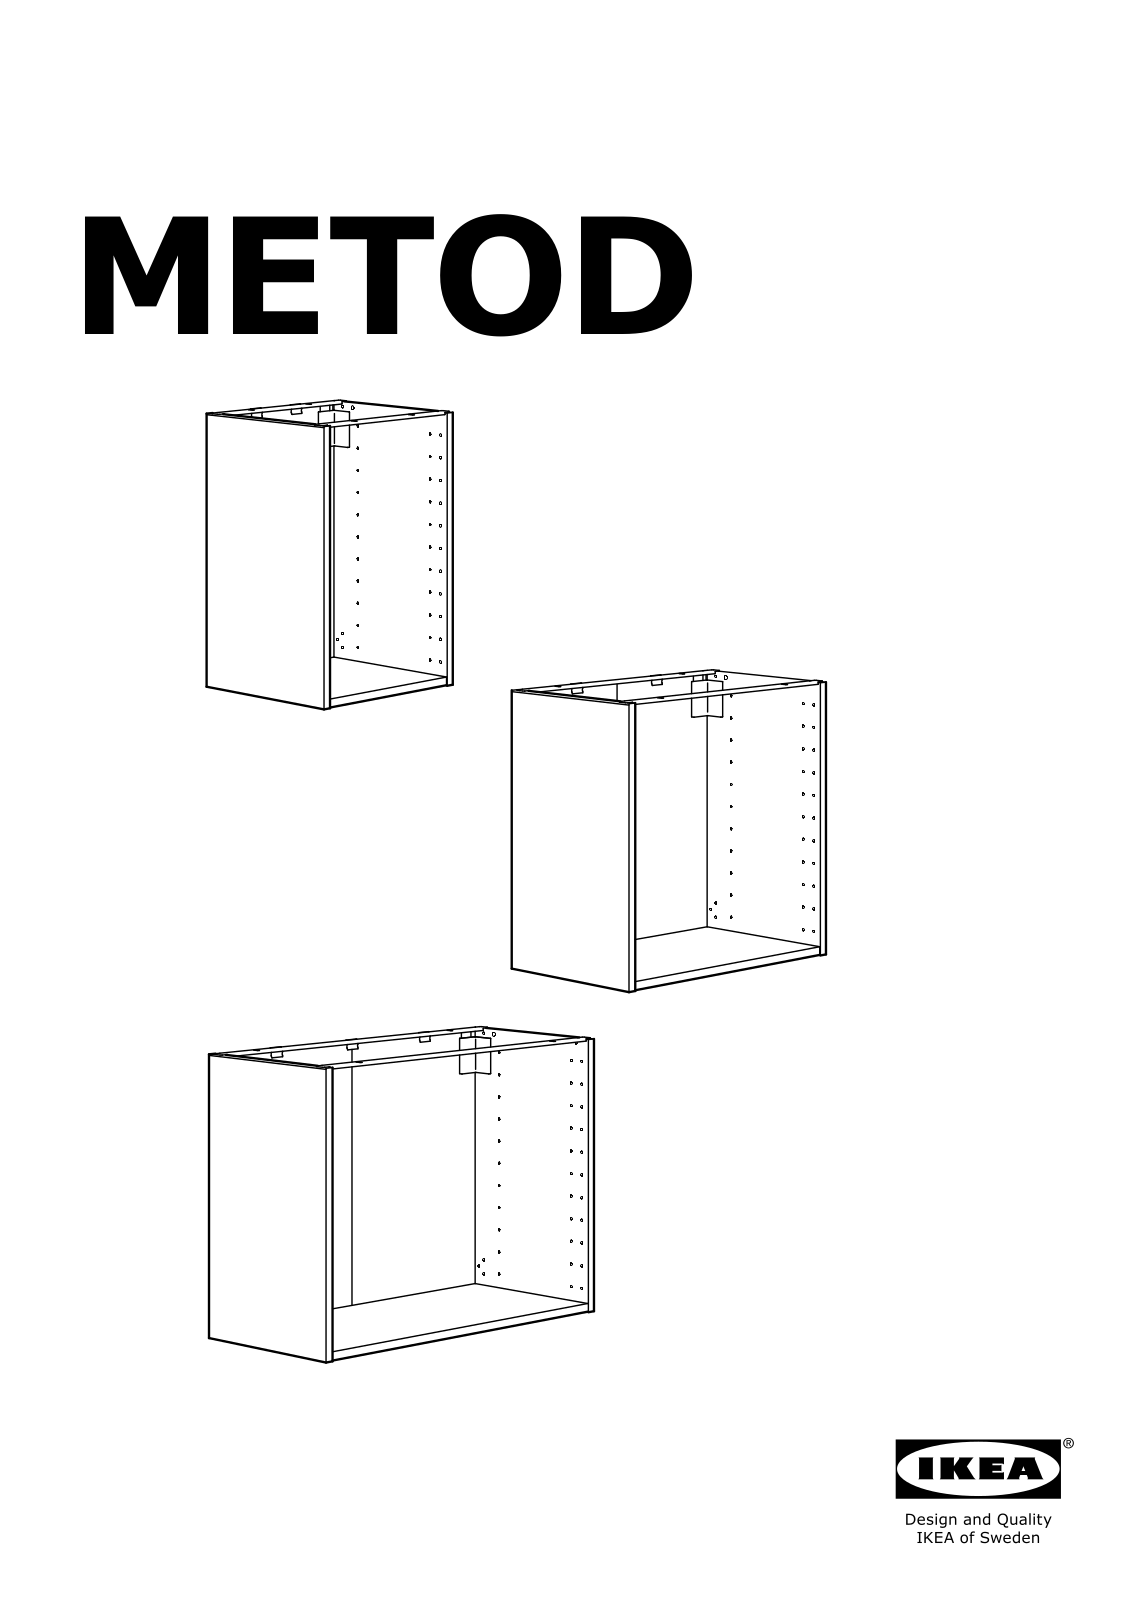 IKEA METOD User Manual